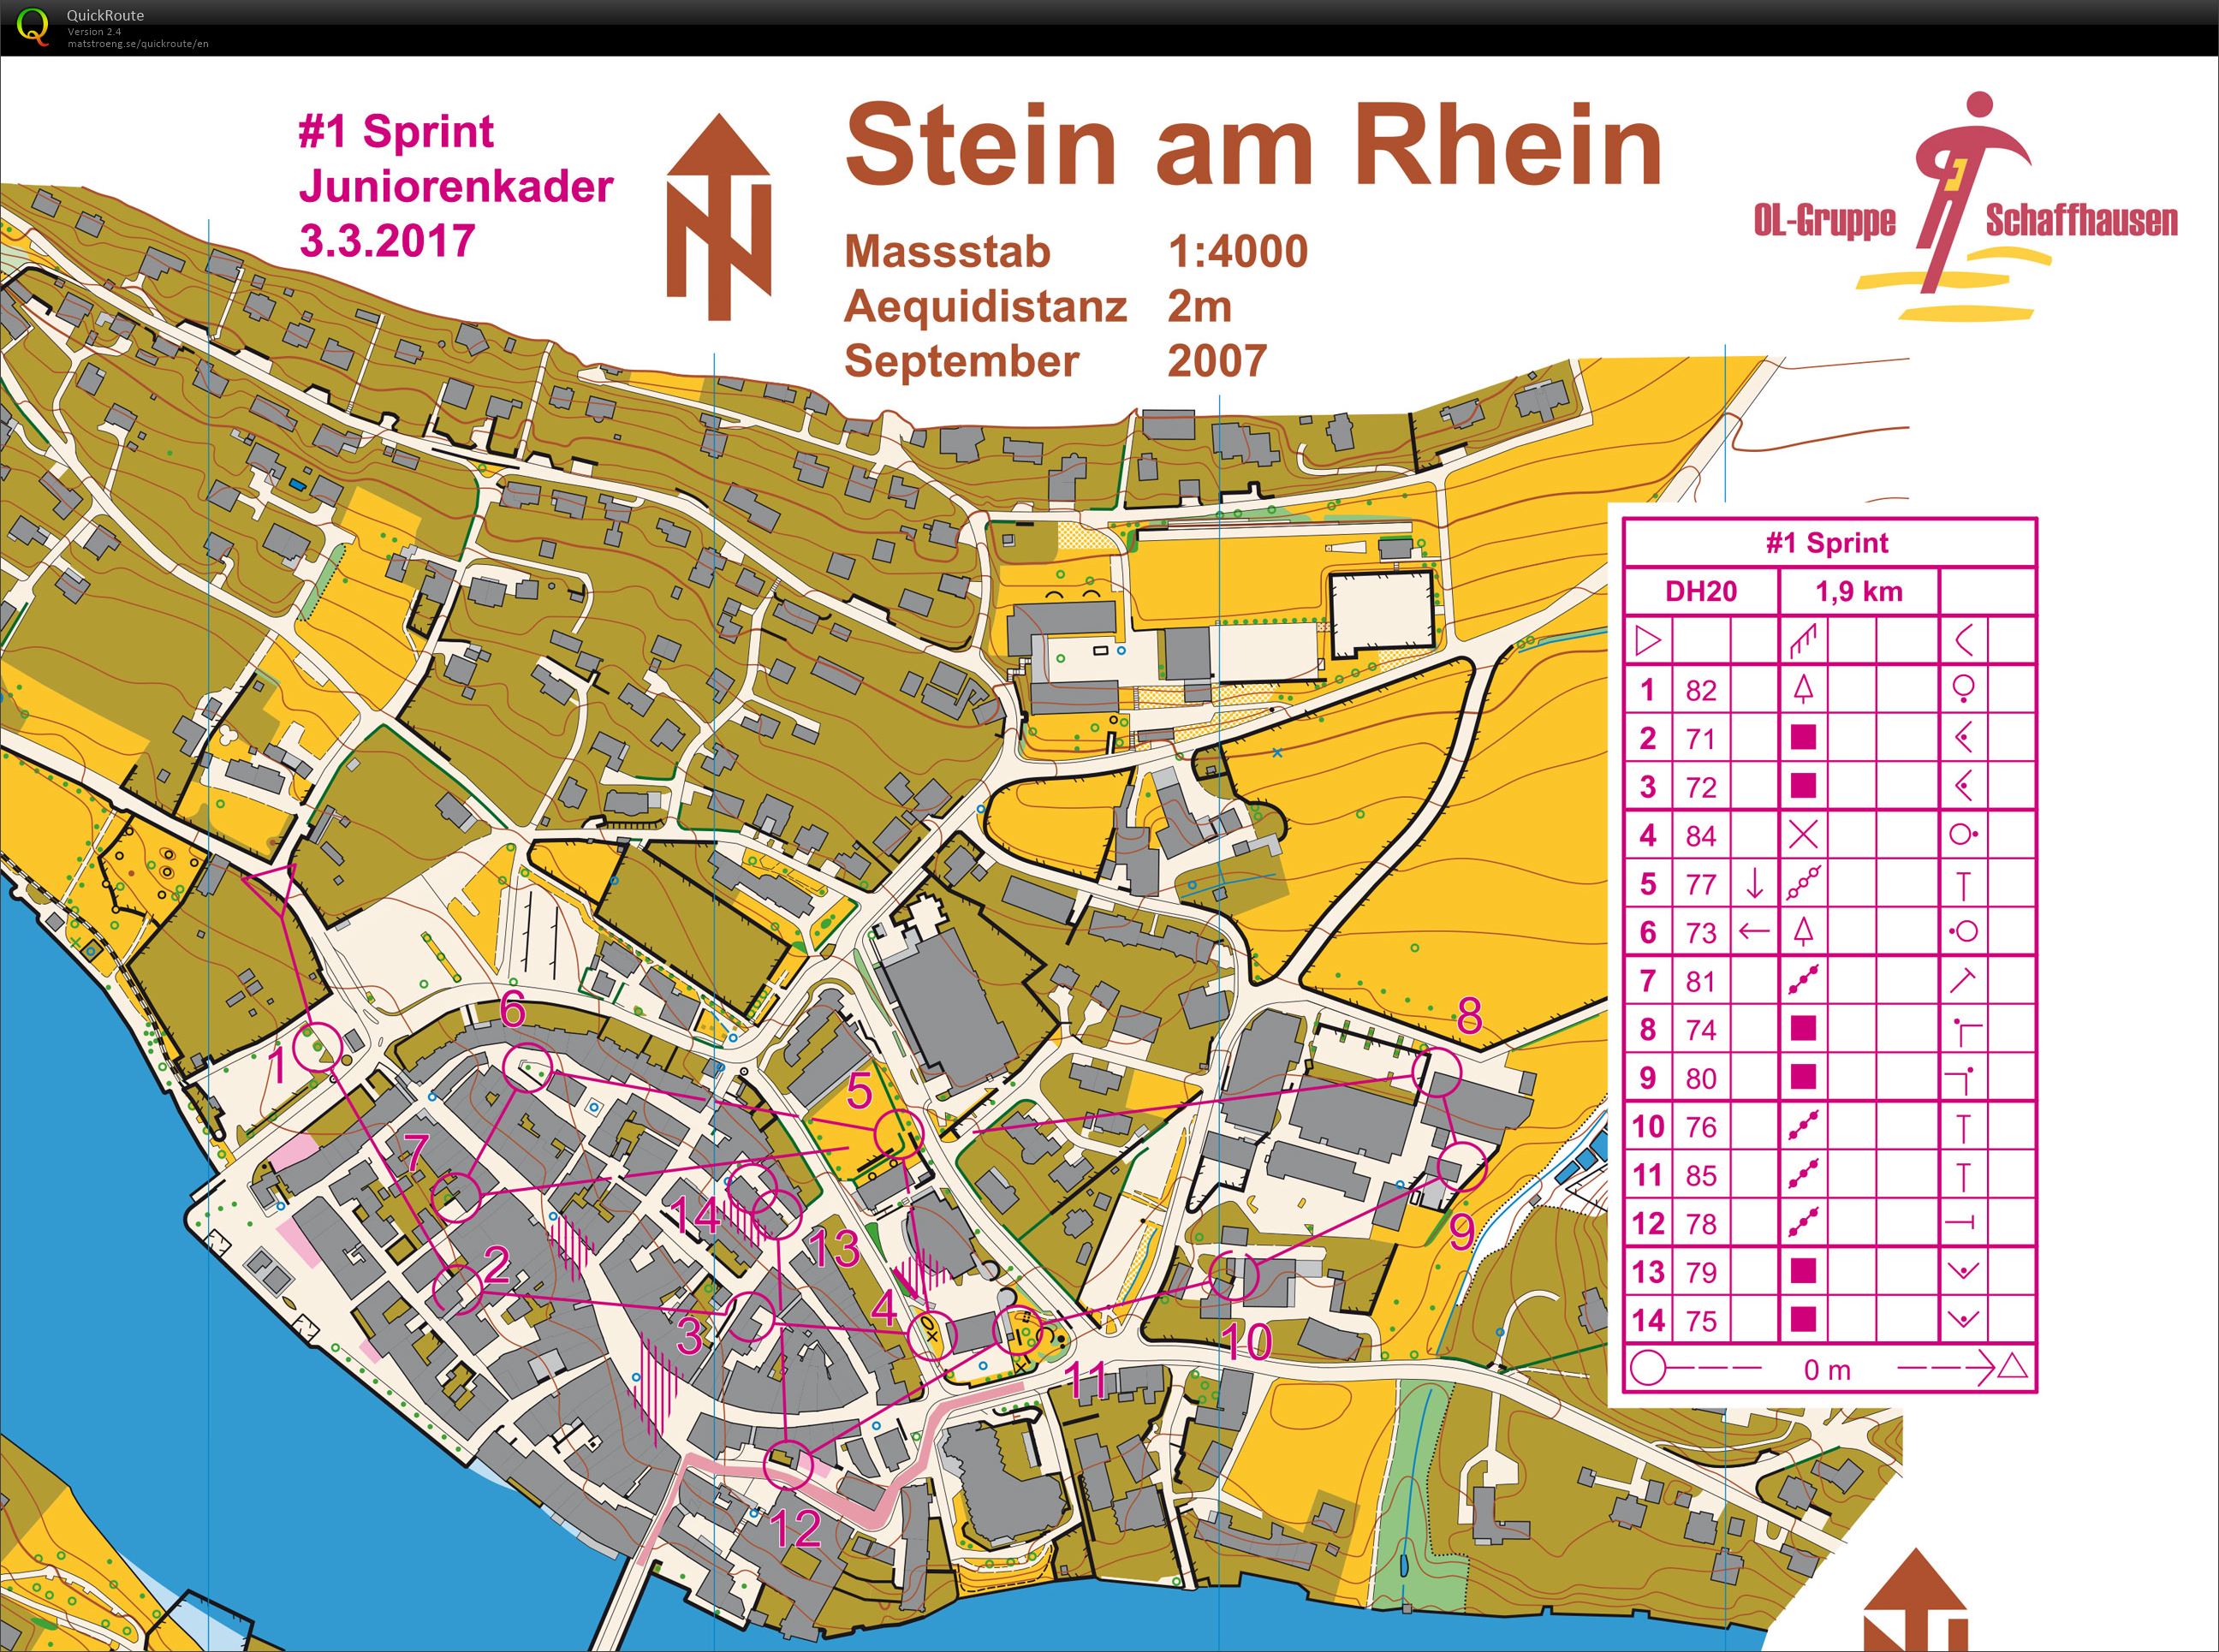 Stein am Rhein (24.07.2020)